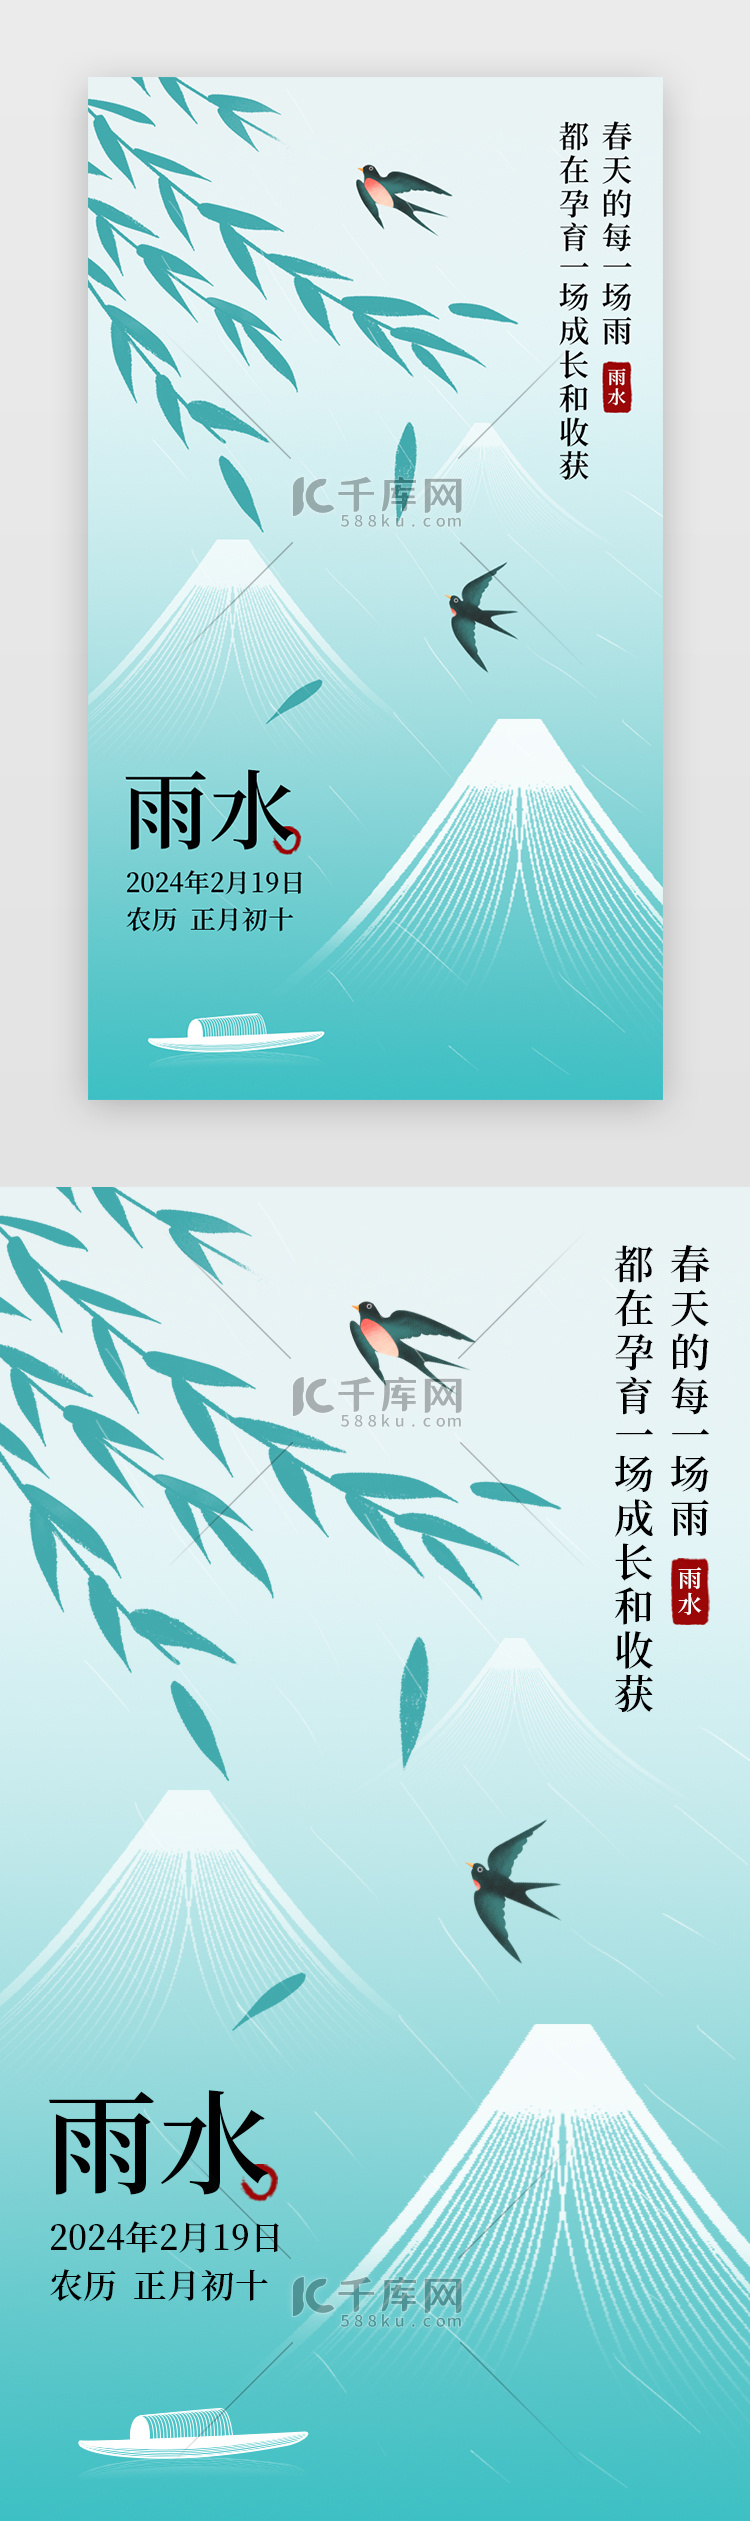 节日雨水海报中国风插画青色燕子 书本